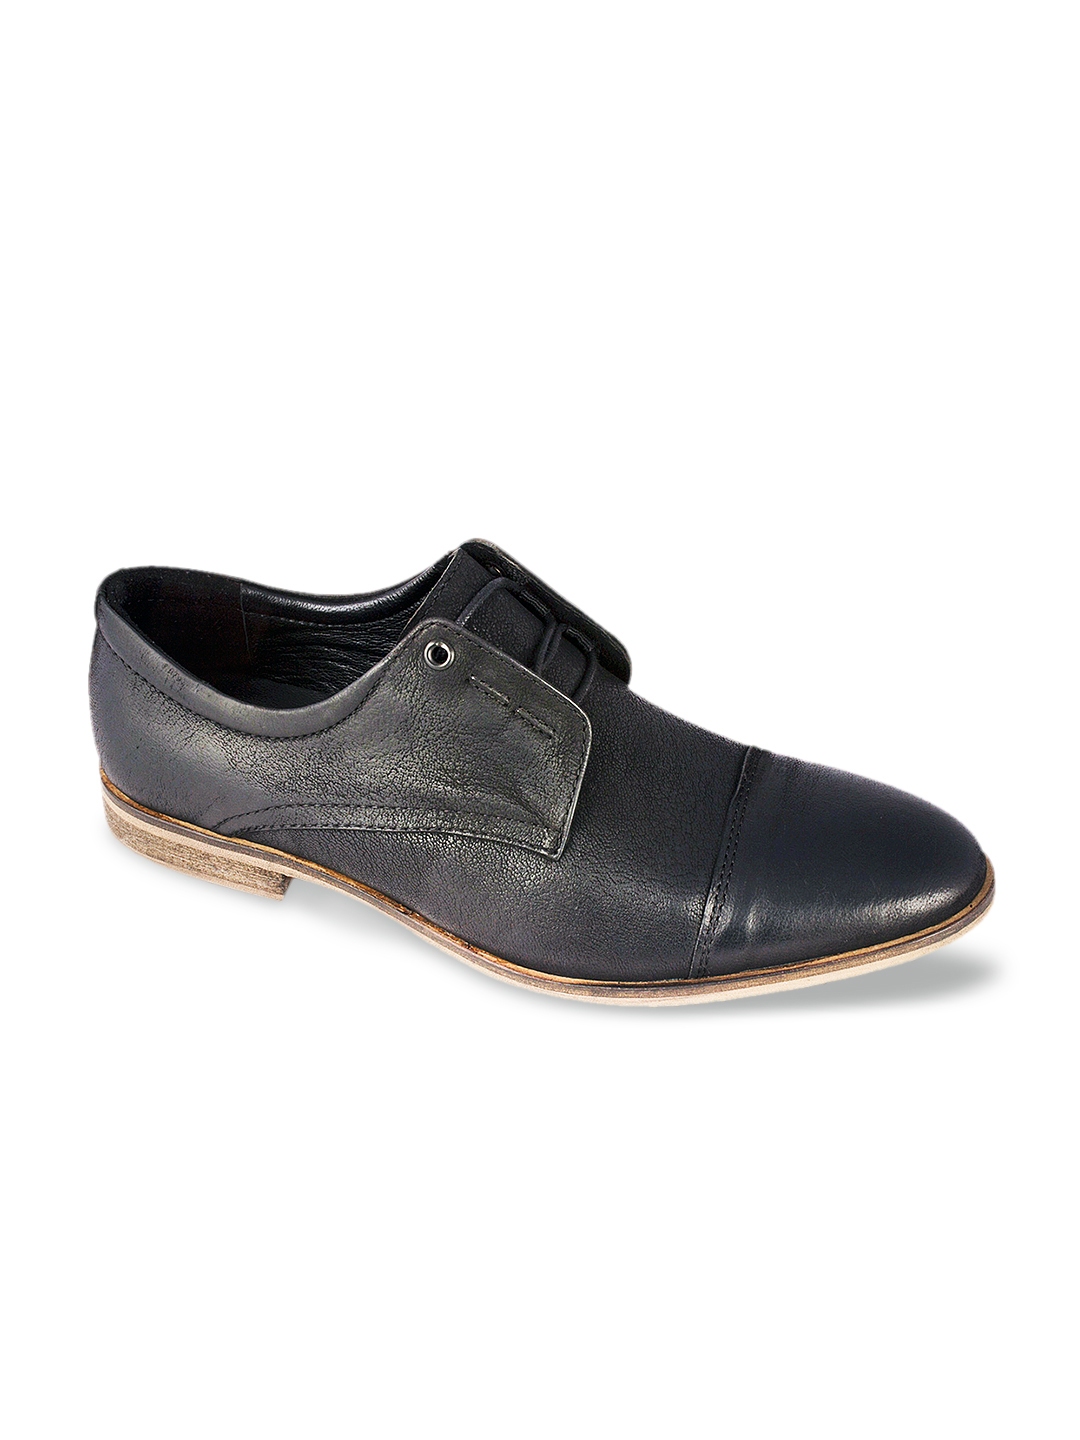 Buy CAPLAND Men Black Leather Formal Shoes - Formal Shoes for Men ...